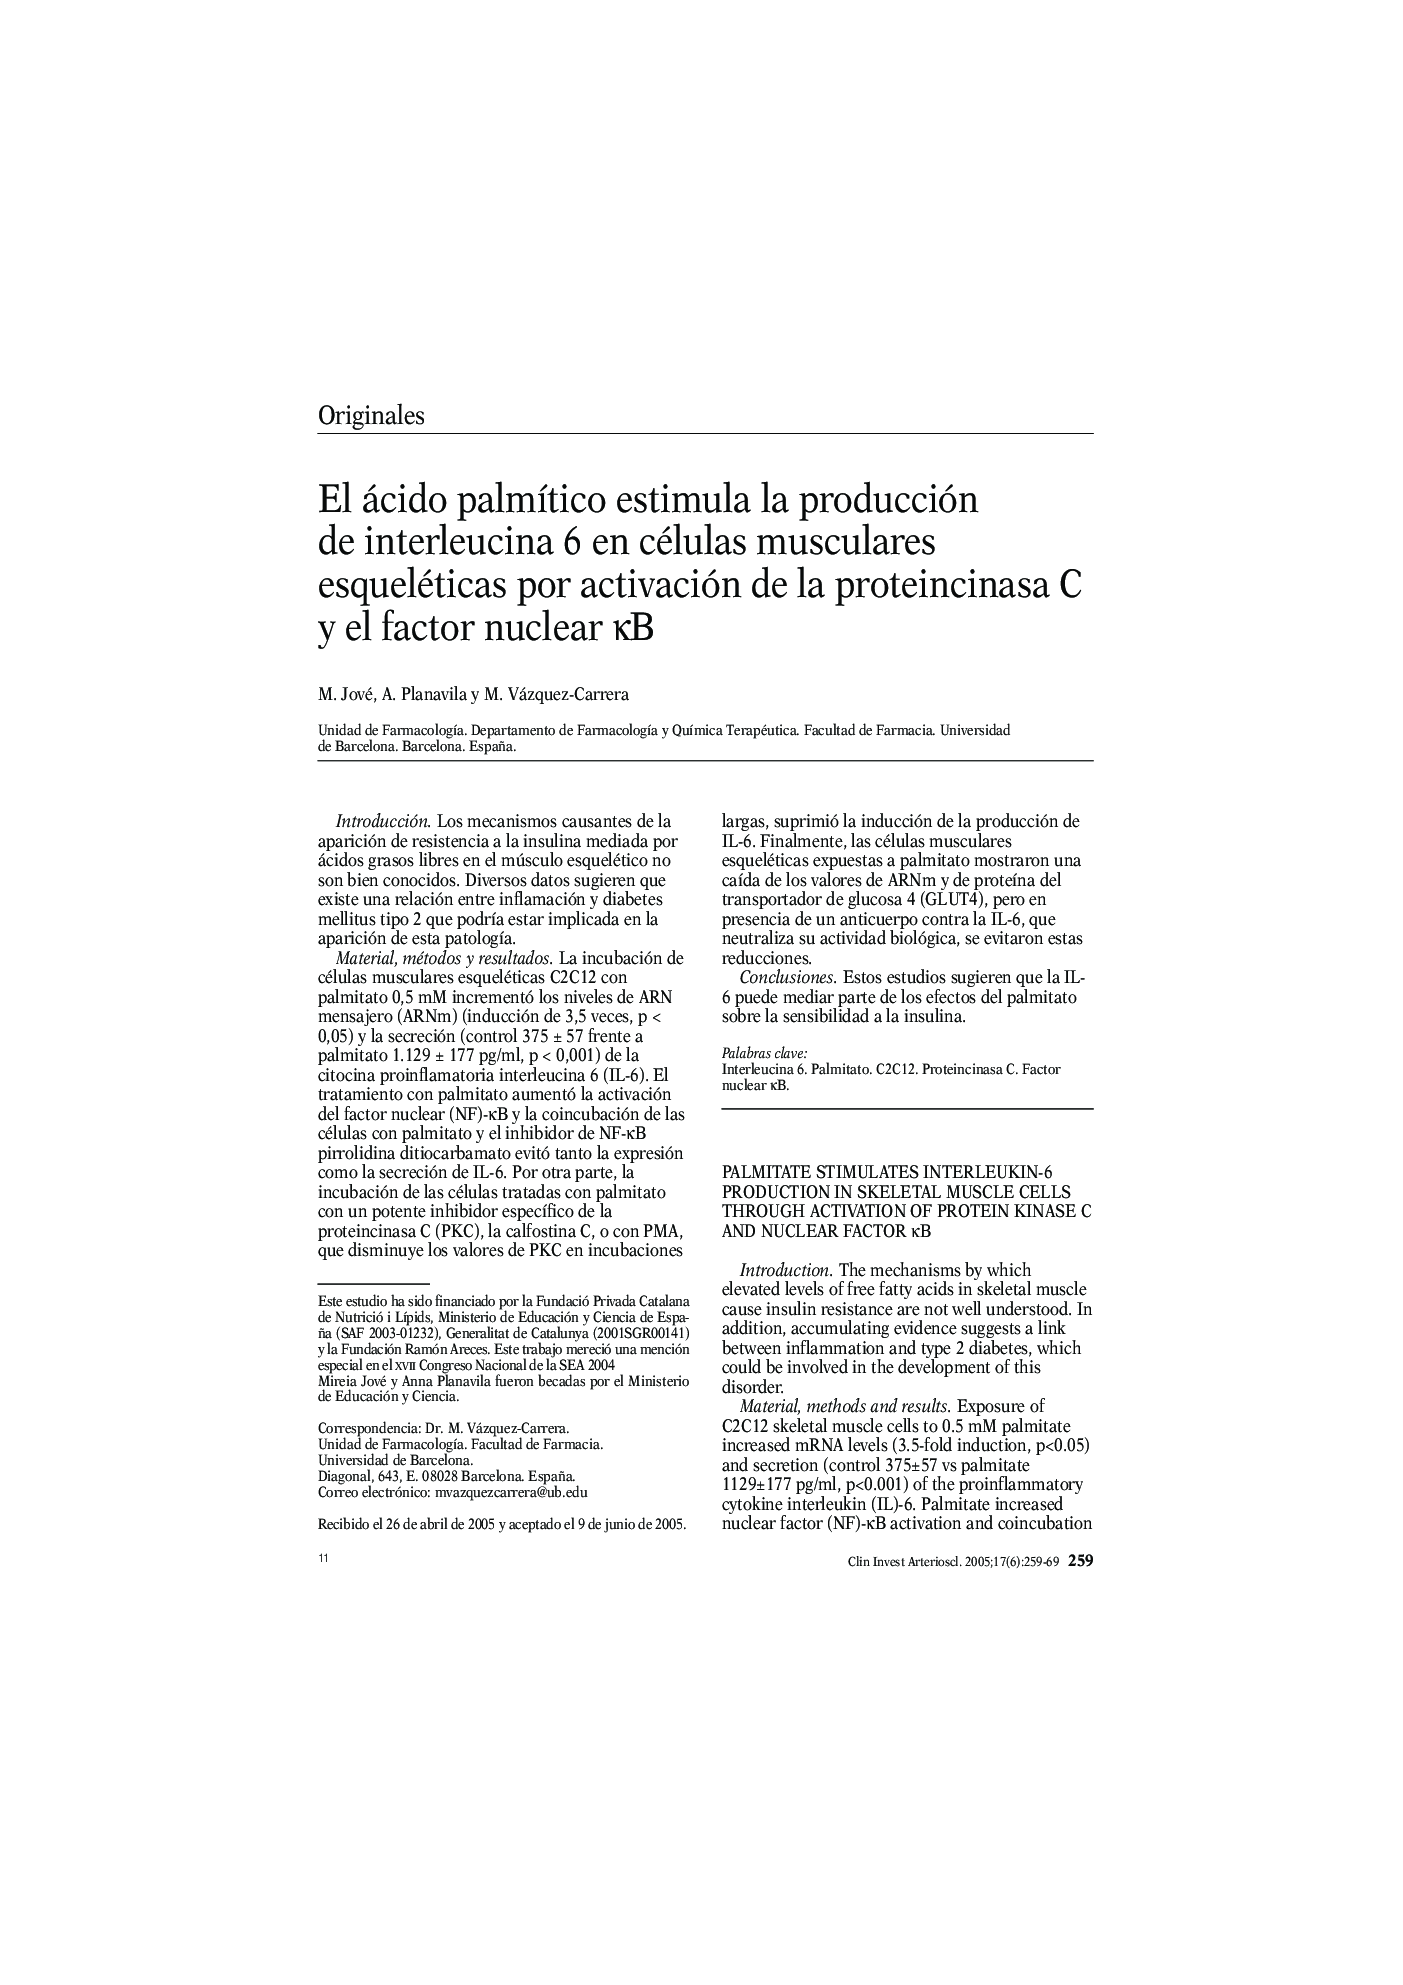 El ácido palmÃ­tico estimula la producción de interleucina 6 en células musculares esqueléticas por activación de la proteincinasa C y el factor nuclear ÎºB